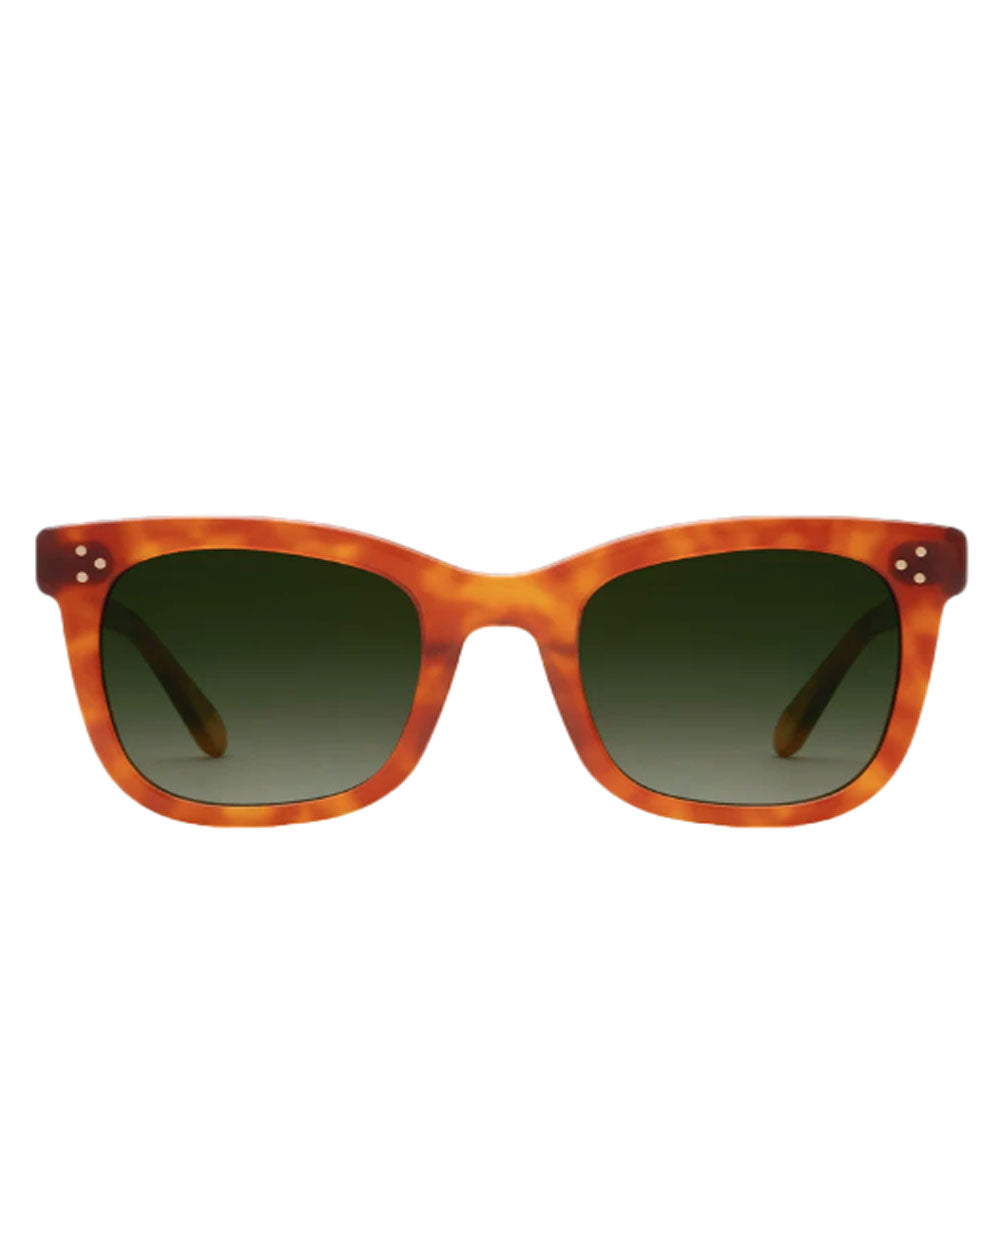 Adele Sunglasses in Amaro